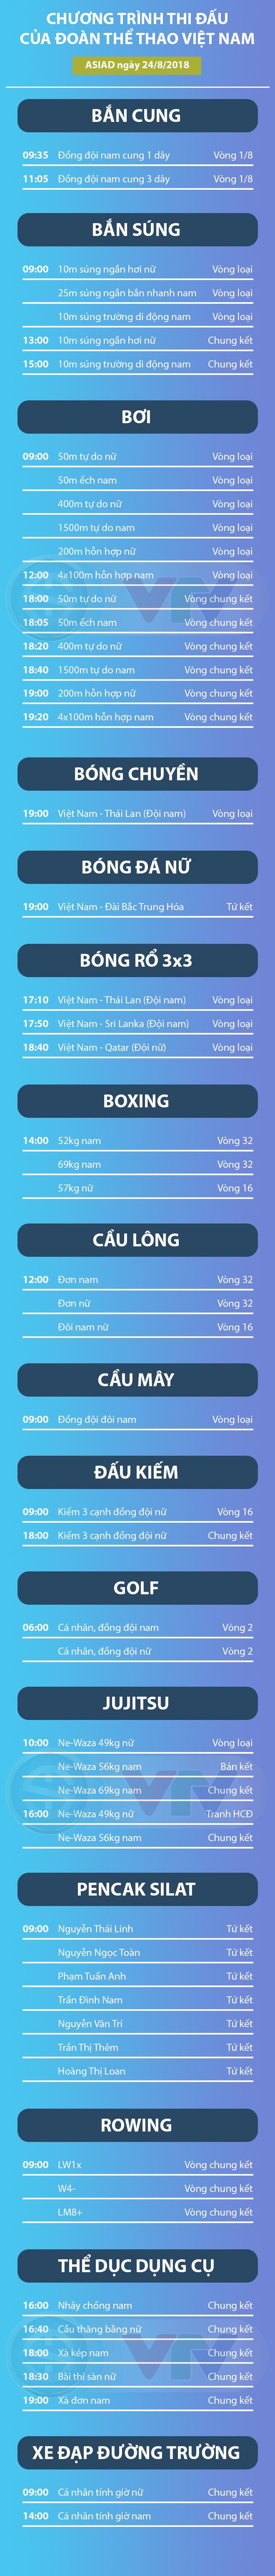 Lịch thi đấu của Đoàn thể thao Việt Nam tại ASIAD 2018 ngày 24/8 - Ảnh 1.